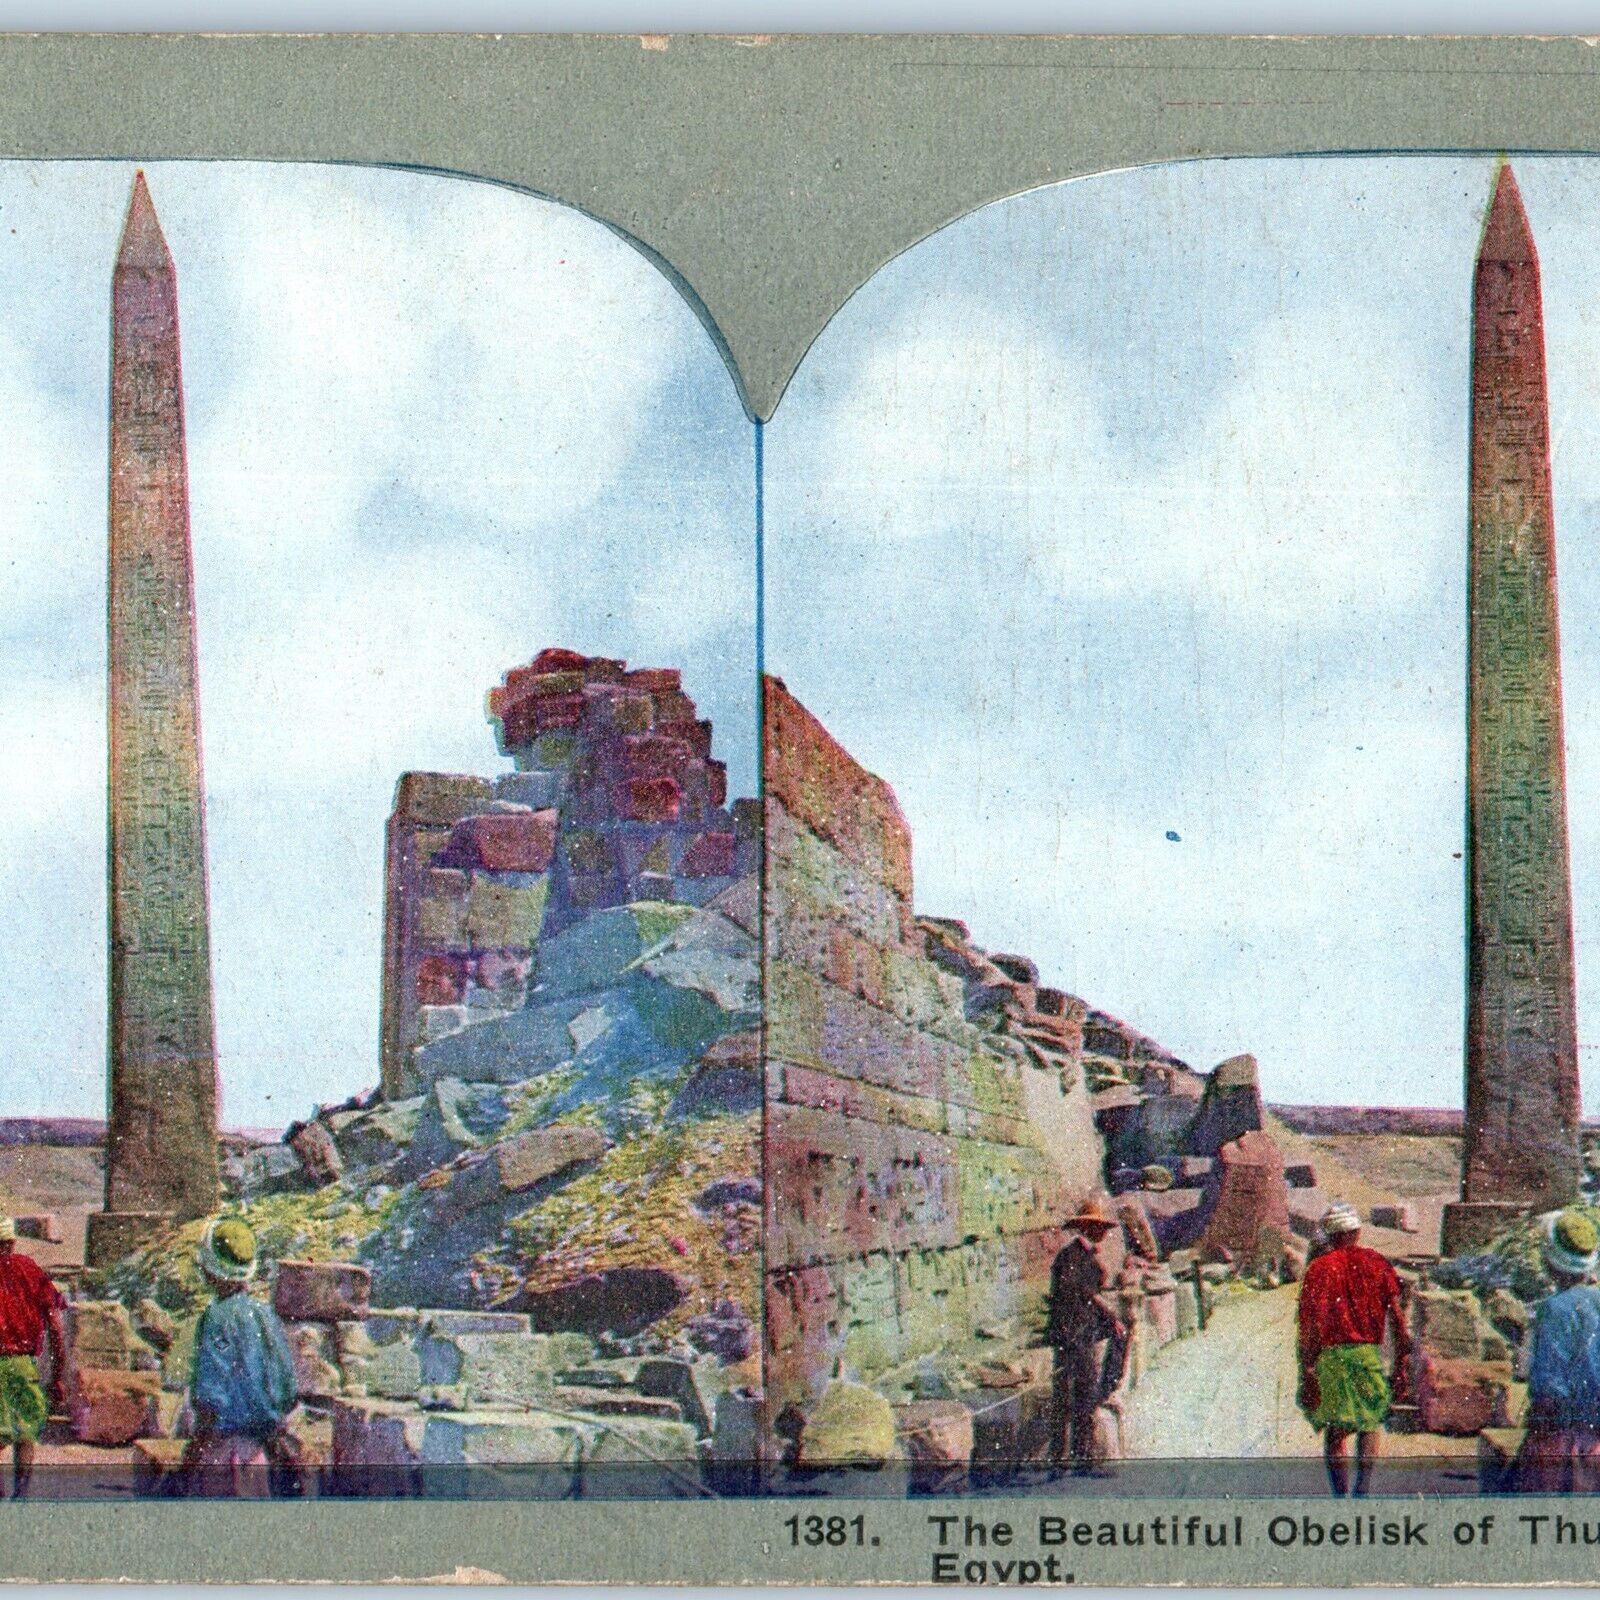 c1900s Karnak, Egypt Obelisk of Thutmosis III Litho Photo Stereo Card V7